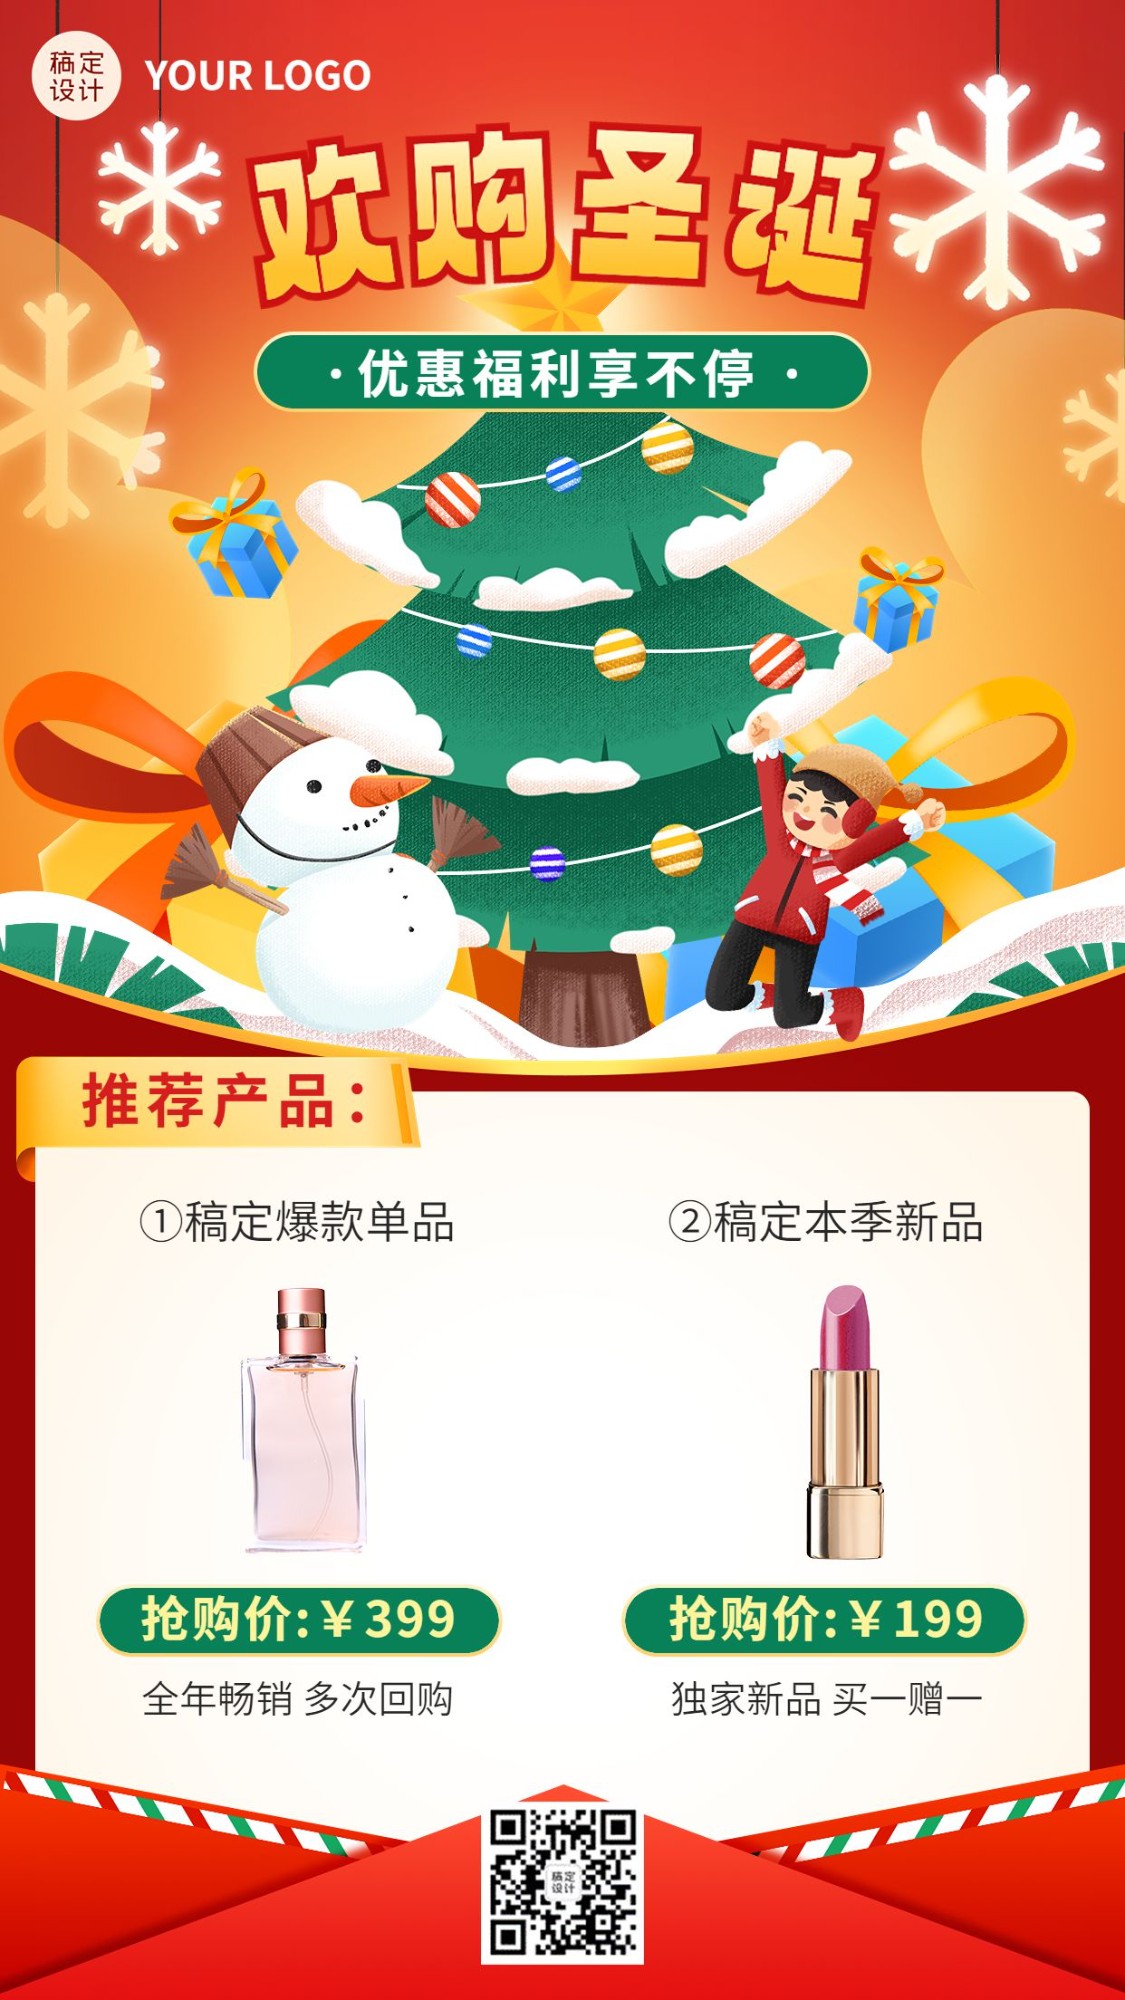 圣诞节产品促销送礼攻略手机海报预览效果